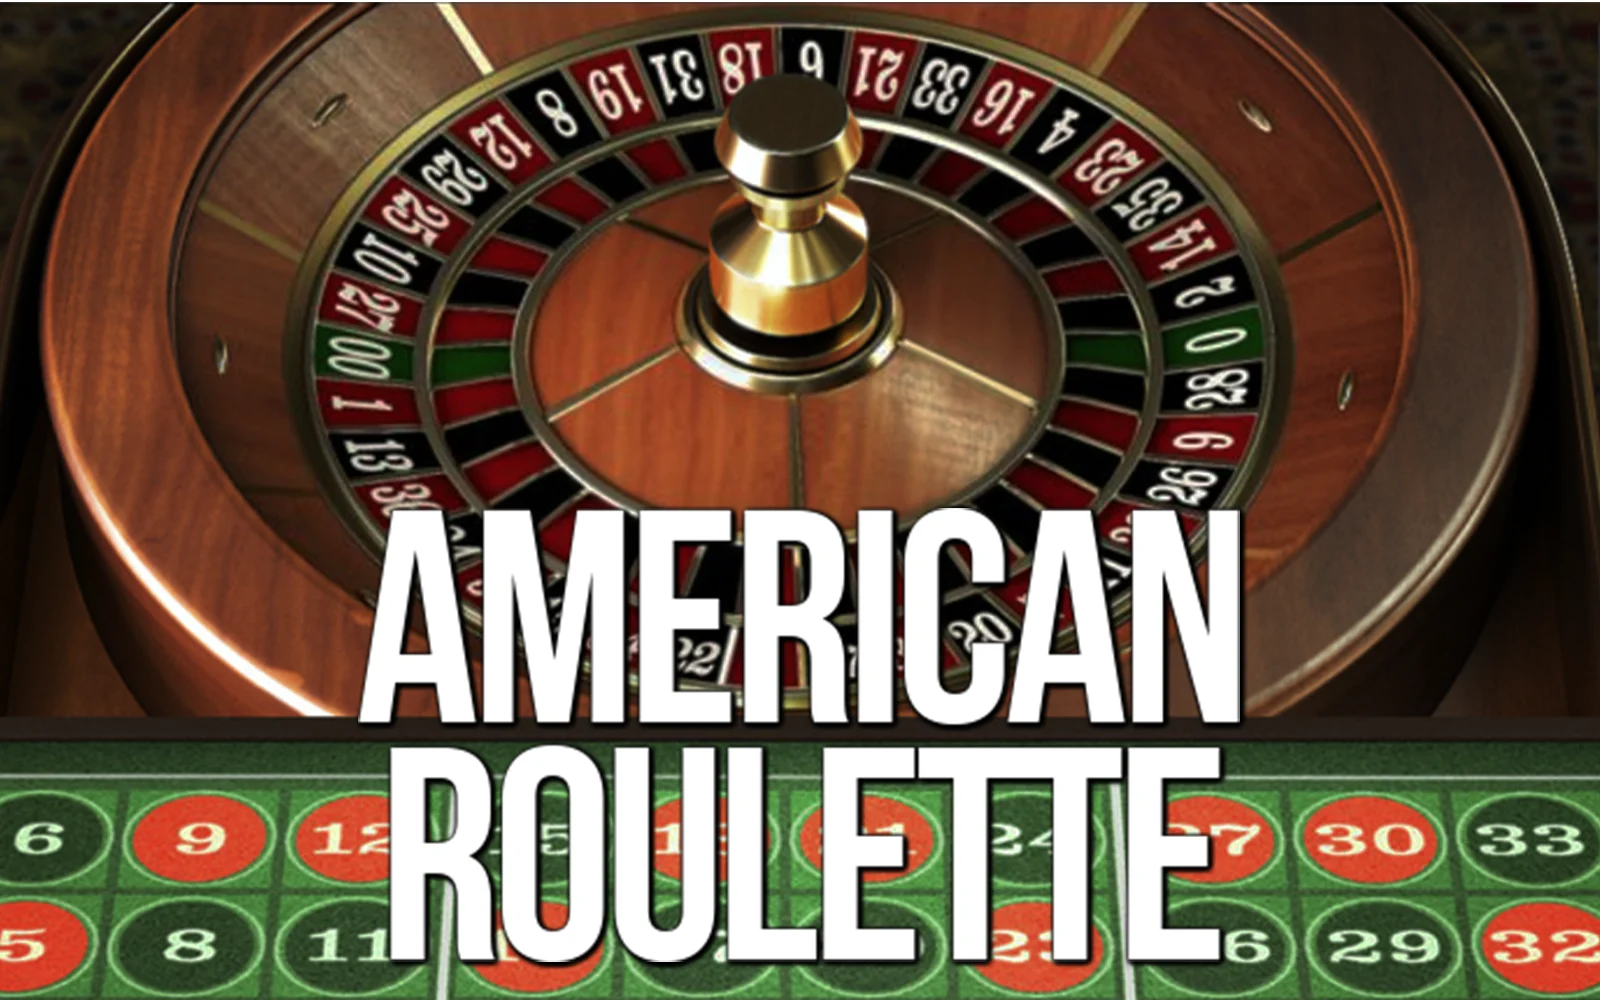 Gioca a American Roulette sul casino online Starcasino.be